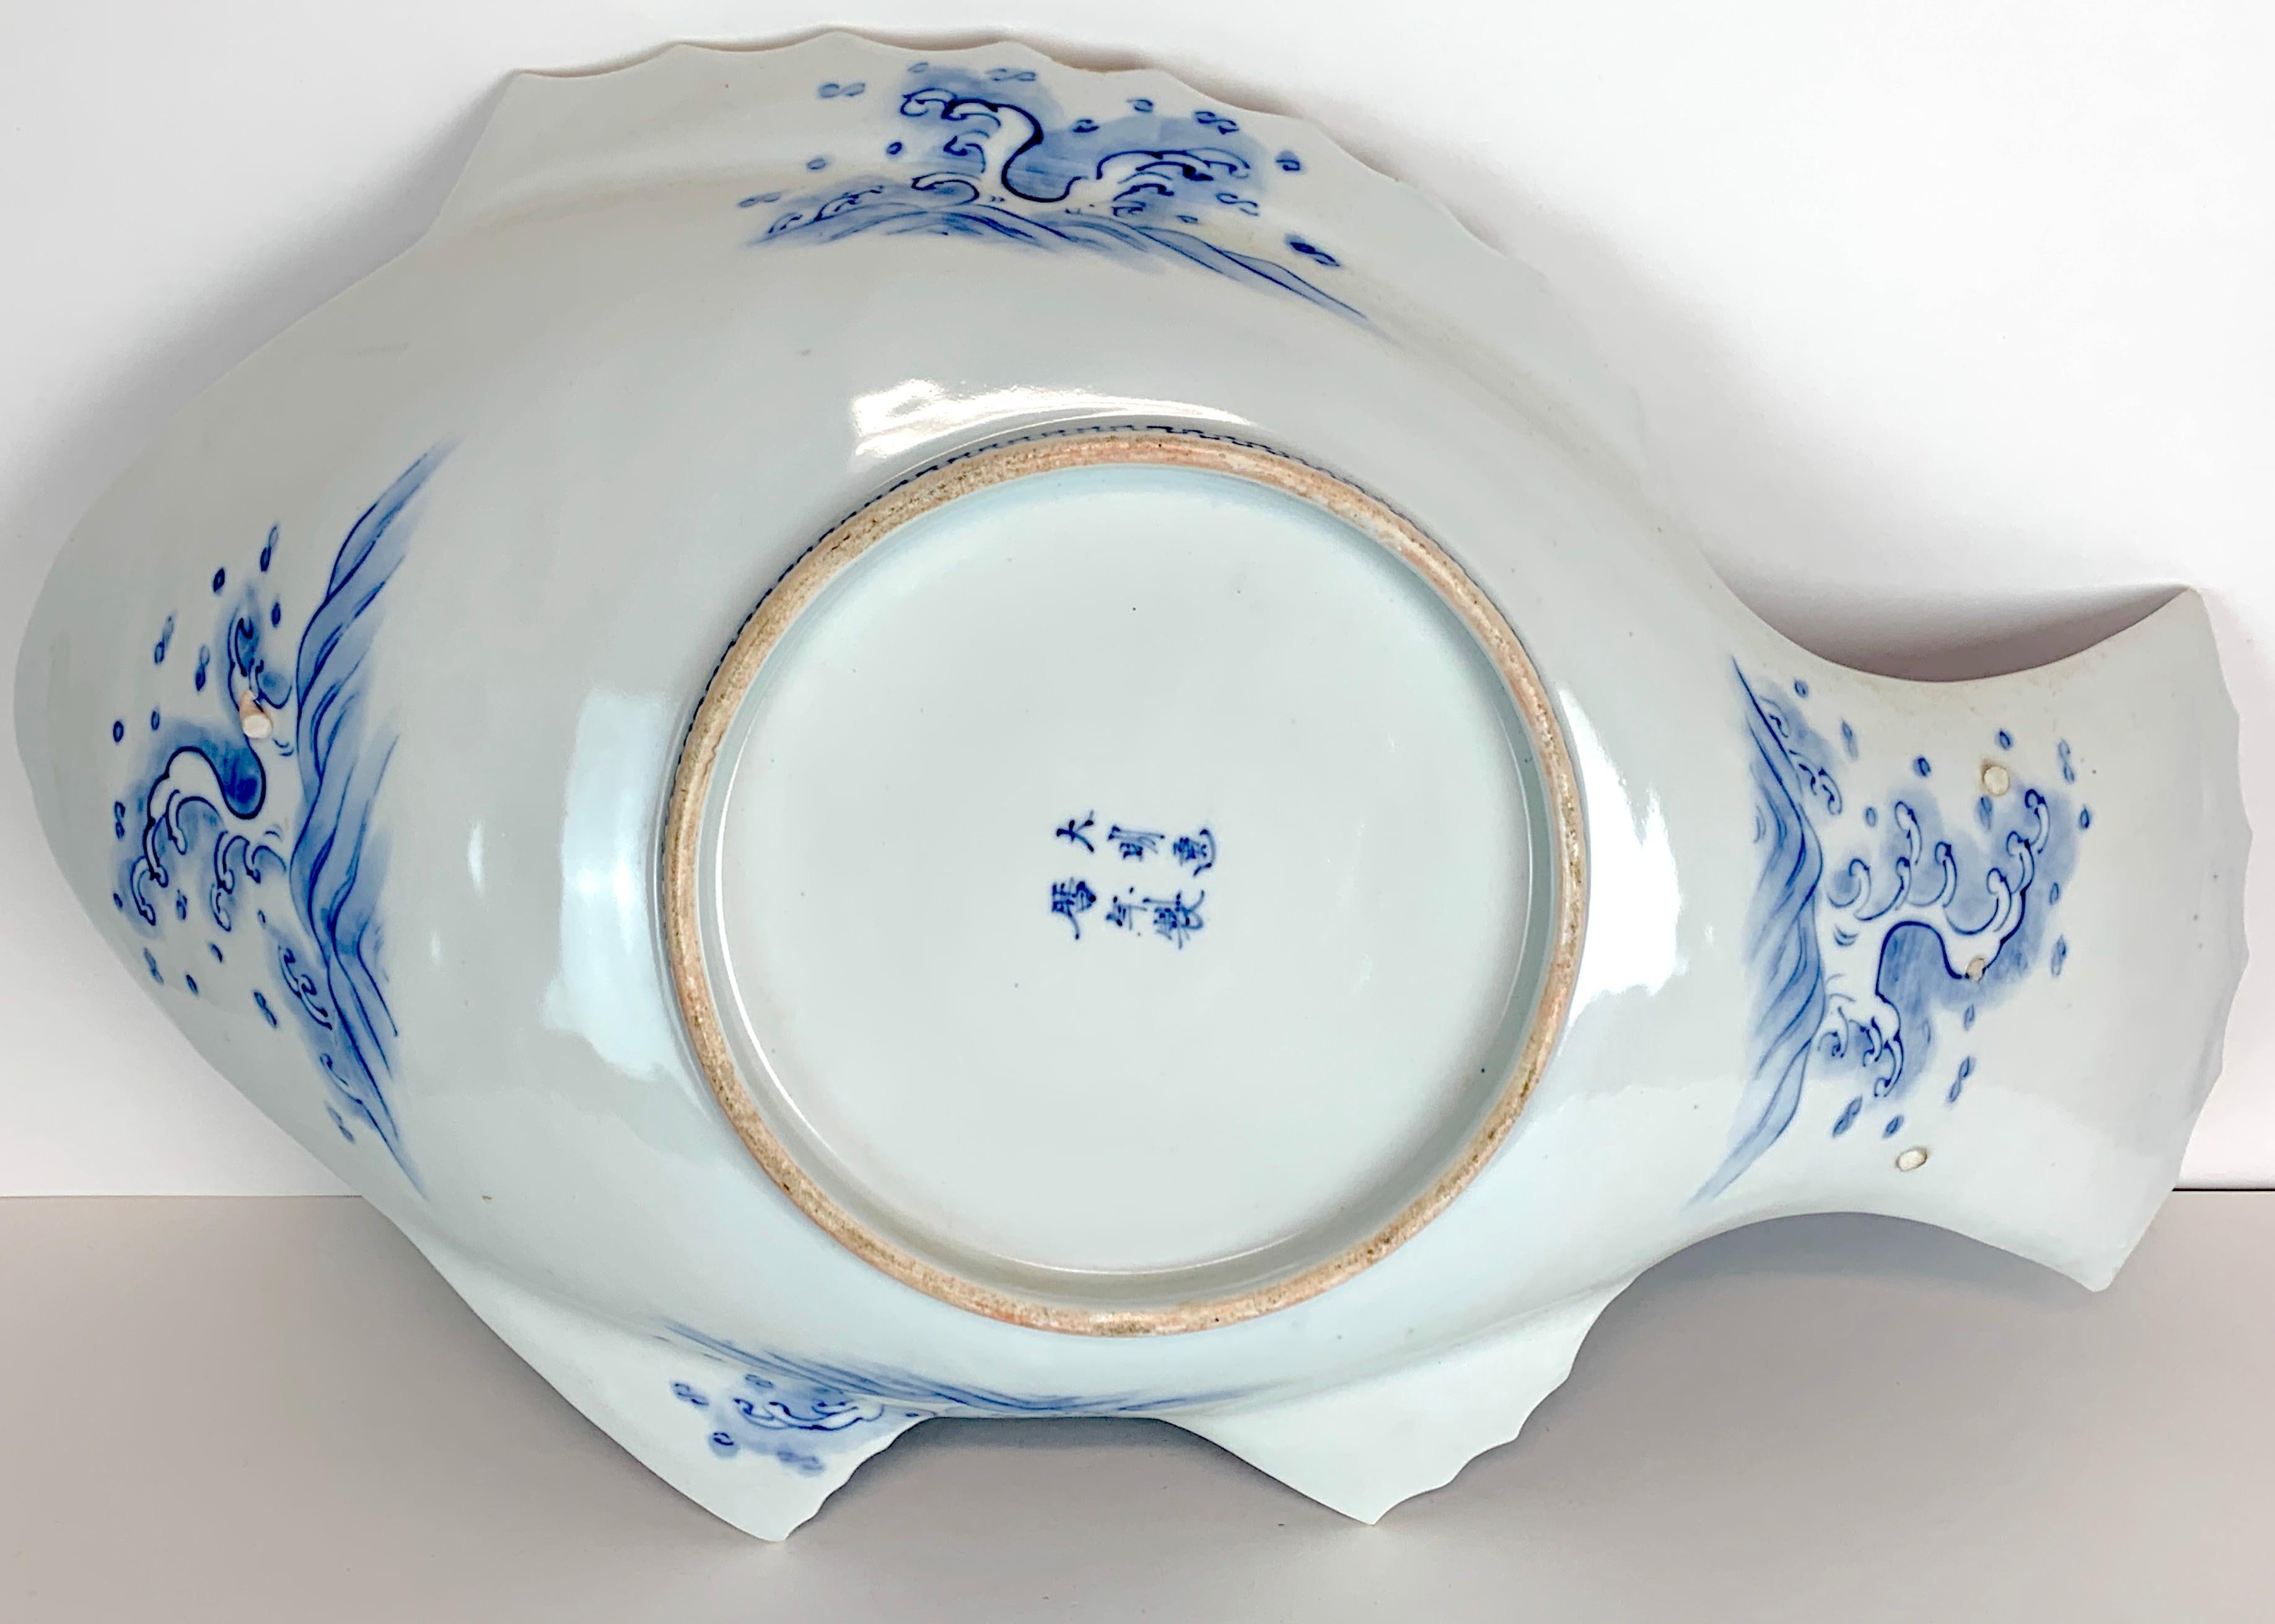 Large Meiji Imari Blue and White Fish Plate, by Fukagawa VII 1